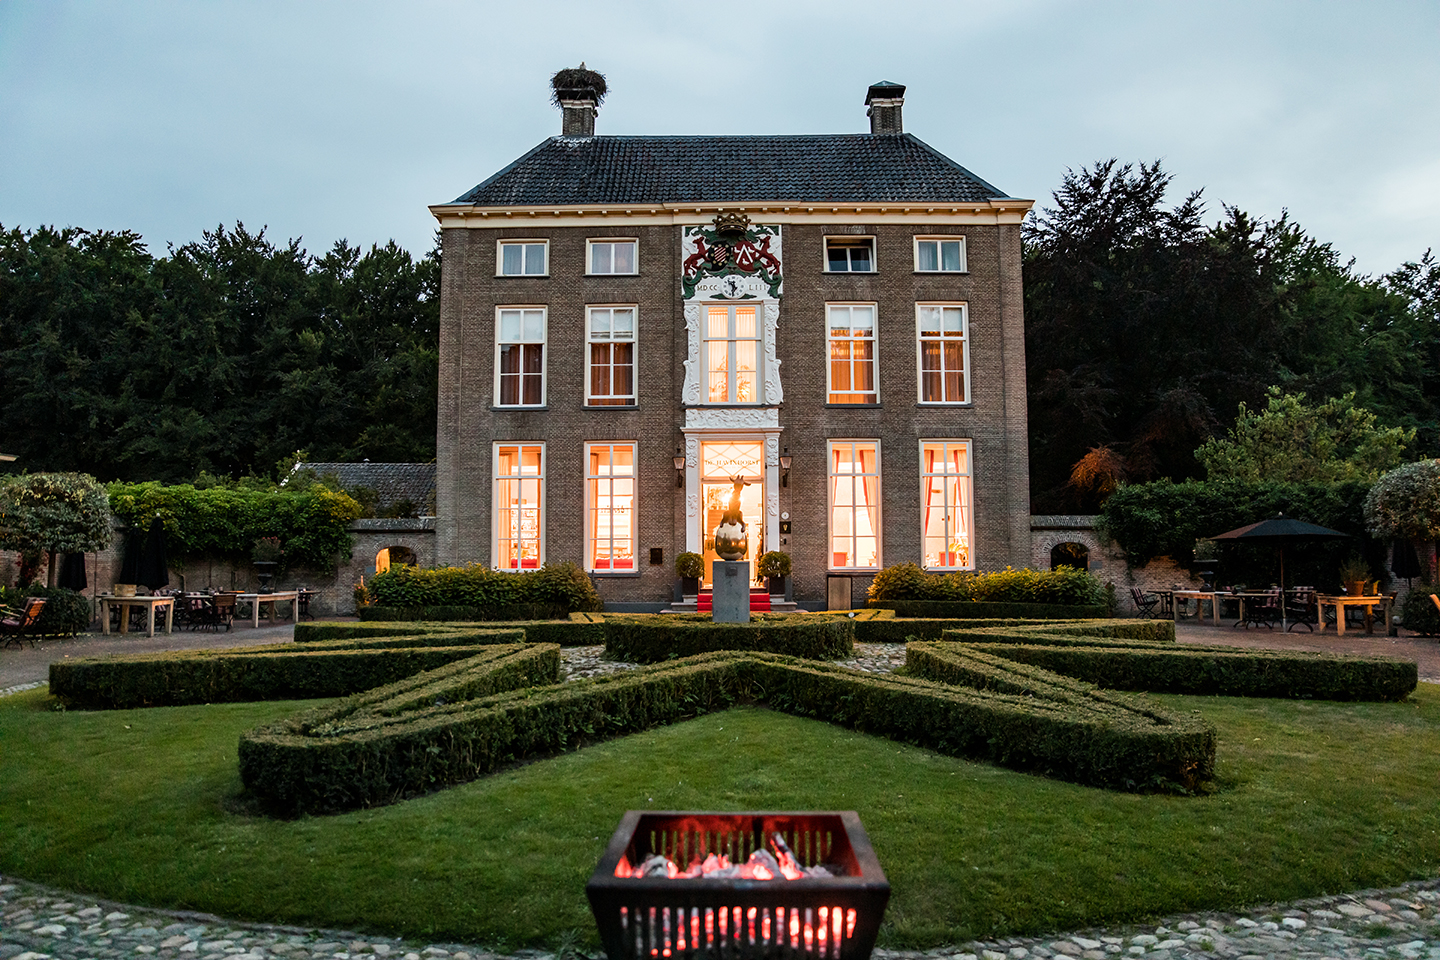 Trouwlocatie Chateauhotel de Havixhorst in Meppel, Drenthe